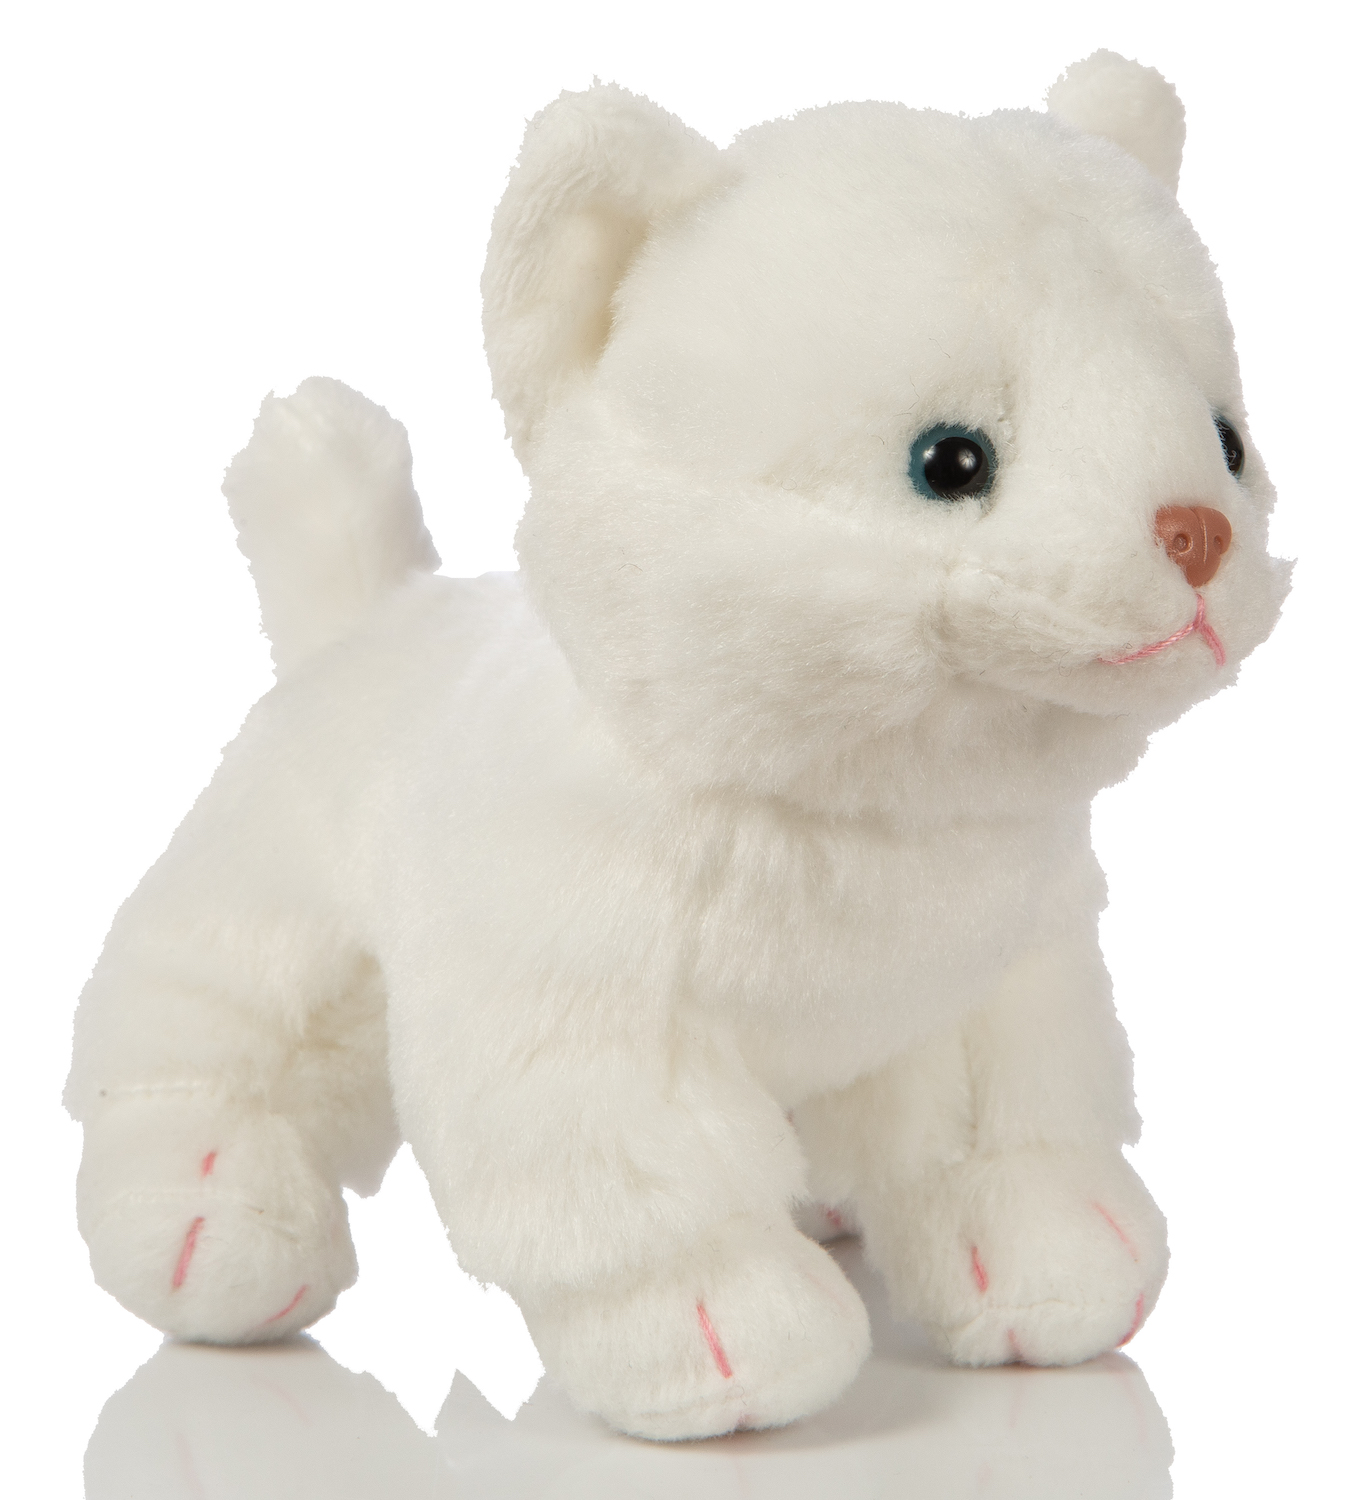 Baby cat (white), standing